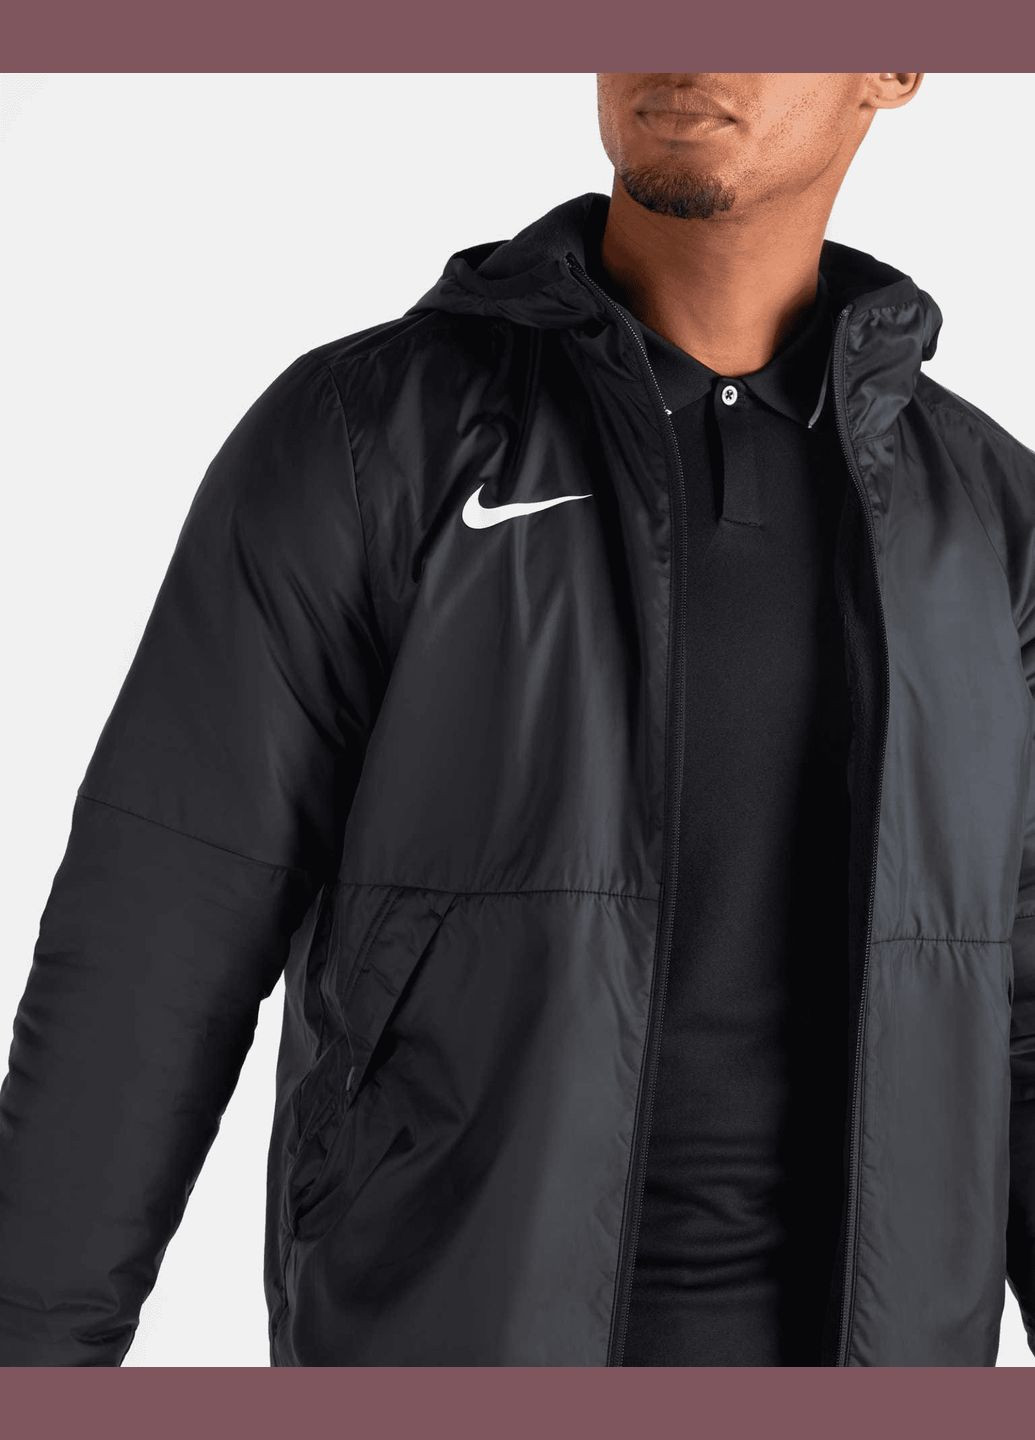 Чорна демісезонна куртка (вітровка) чоловіча fall jacket park 20 cw6157-010 весна-осінь чорна Nike